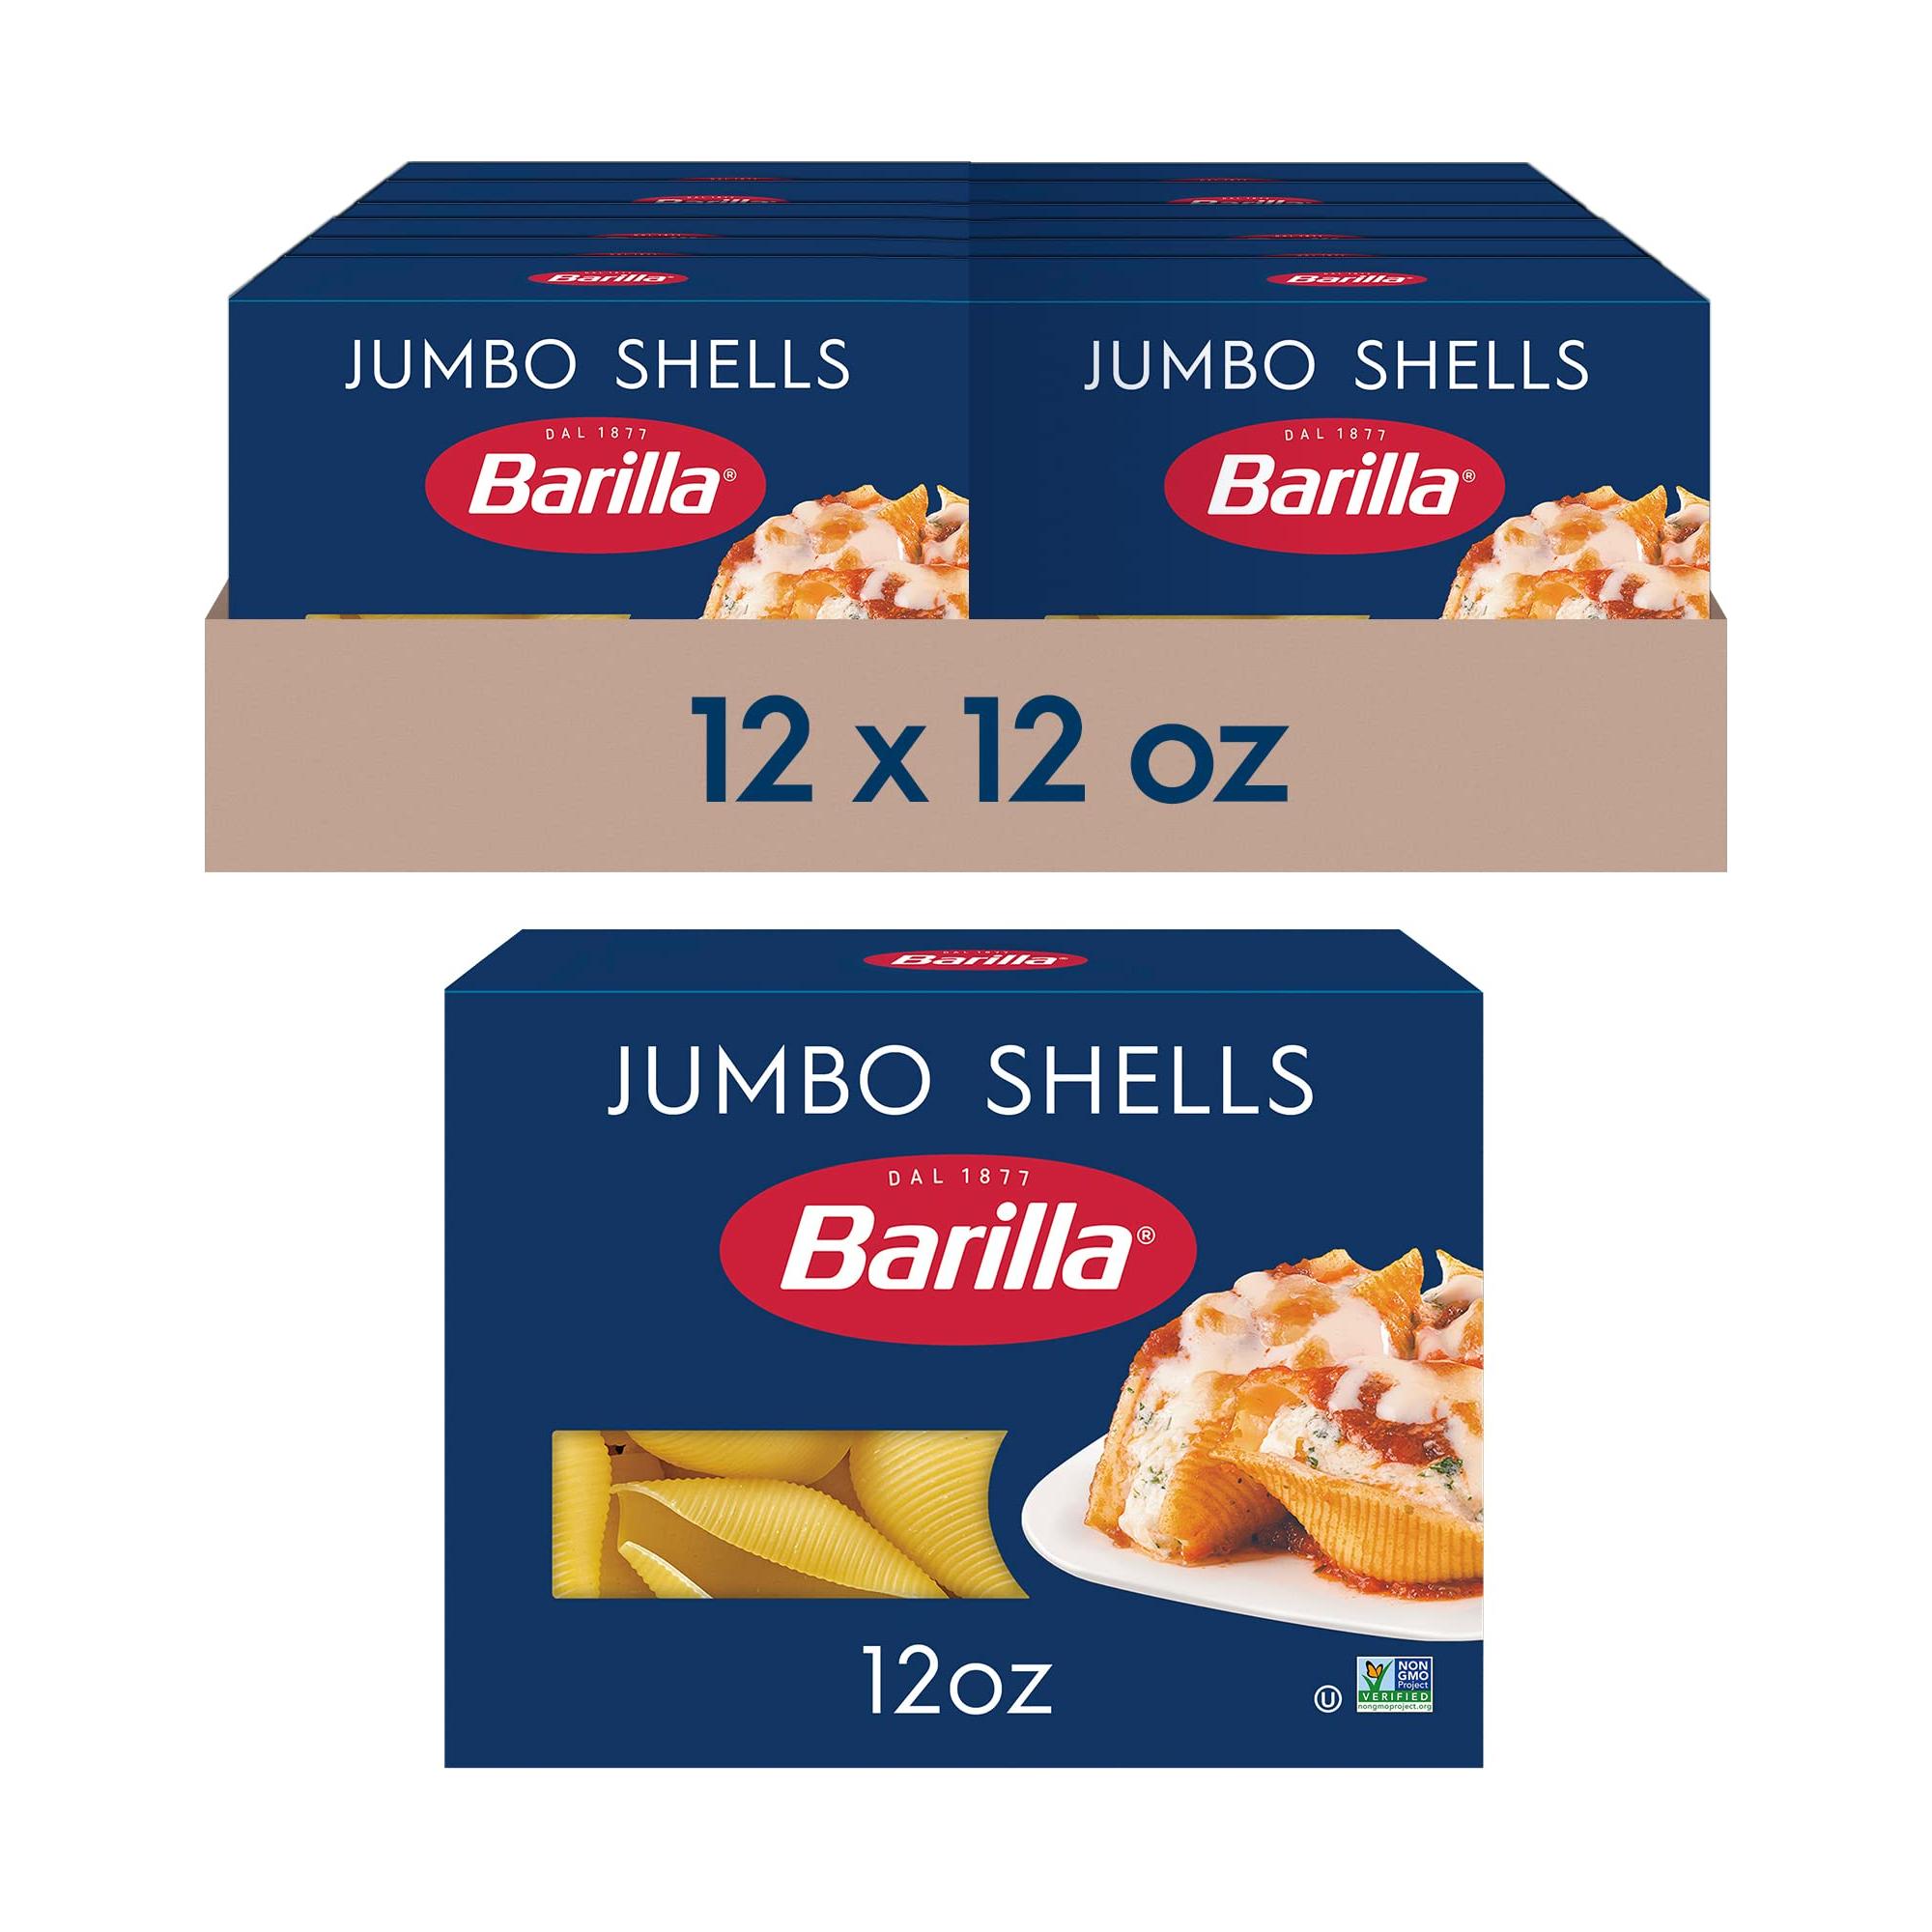 Barilla Jumbo Shells Pasta, 16 oz. Box (Pack of 12) - Non-GMO Pasta Made with Durum Wheat Semolina - Kosher Certified Pasta